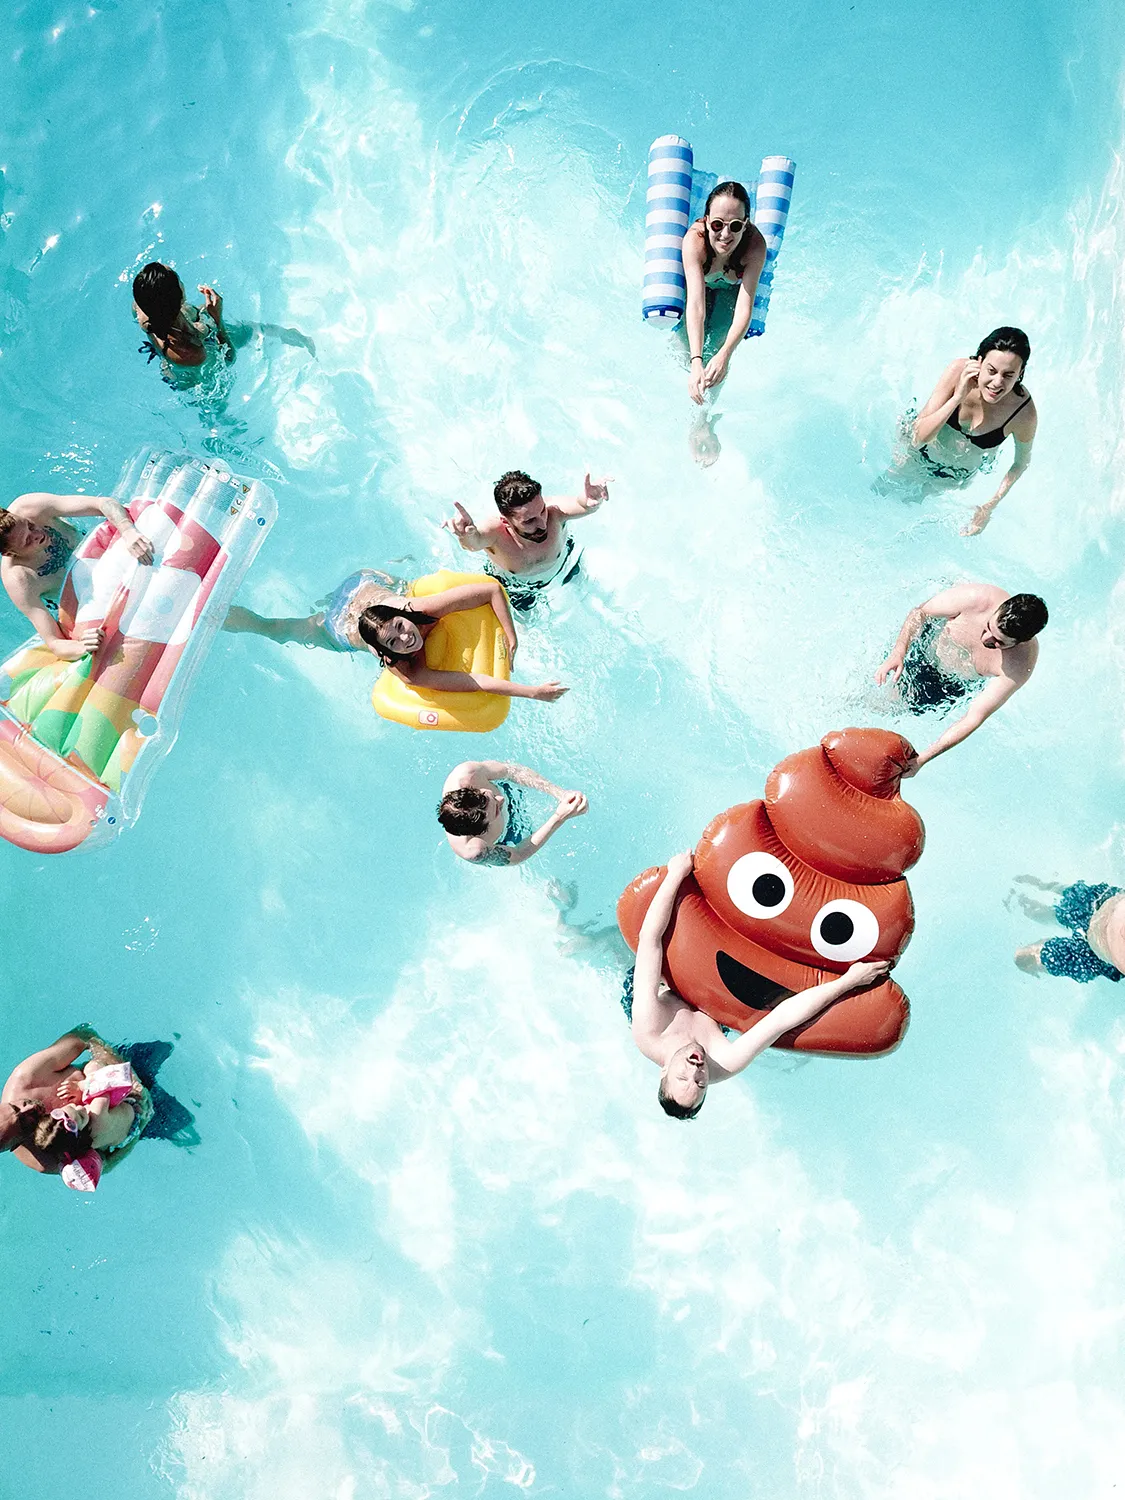 Una fotografia dall'alto di un gruppo di persone che stanno festeggiando in una piscina